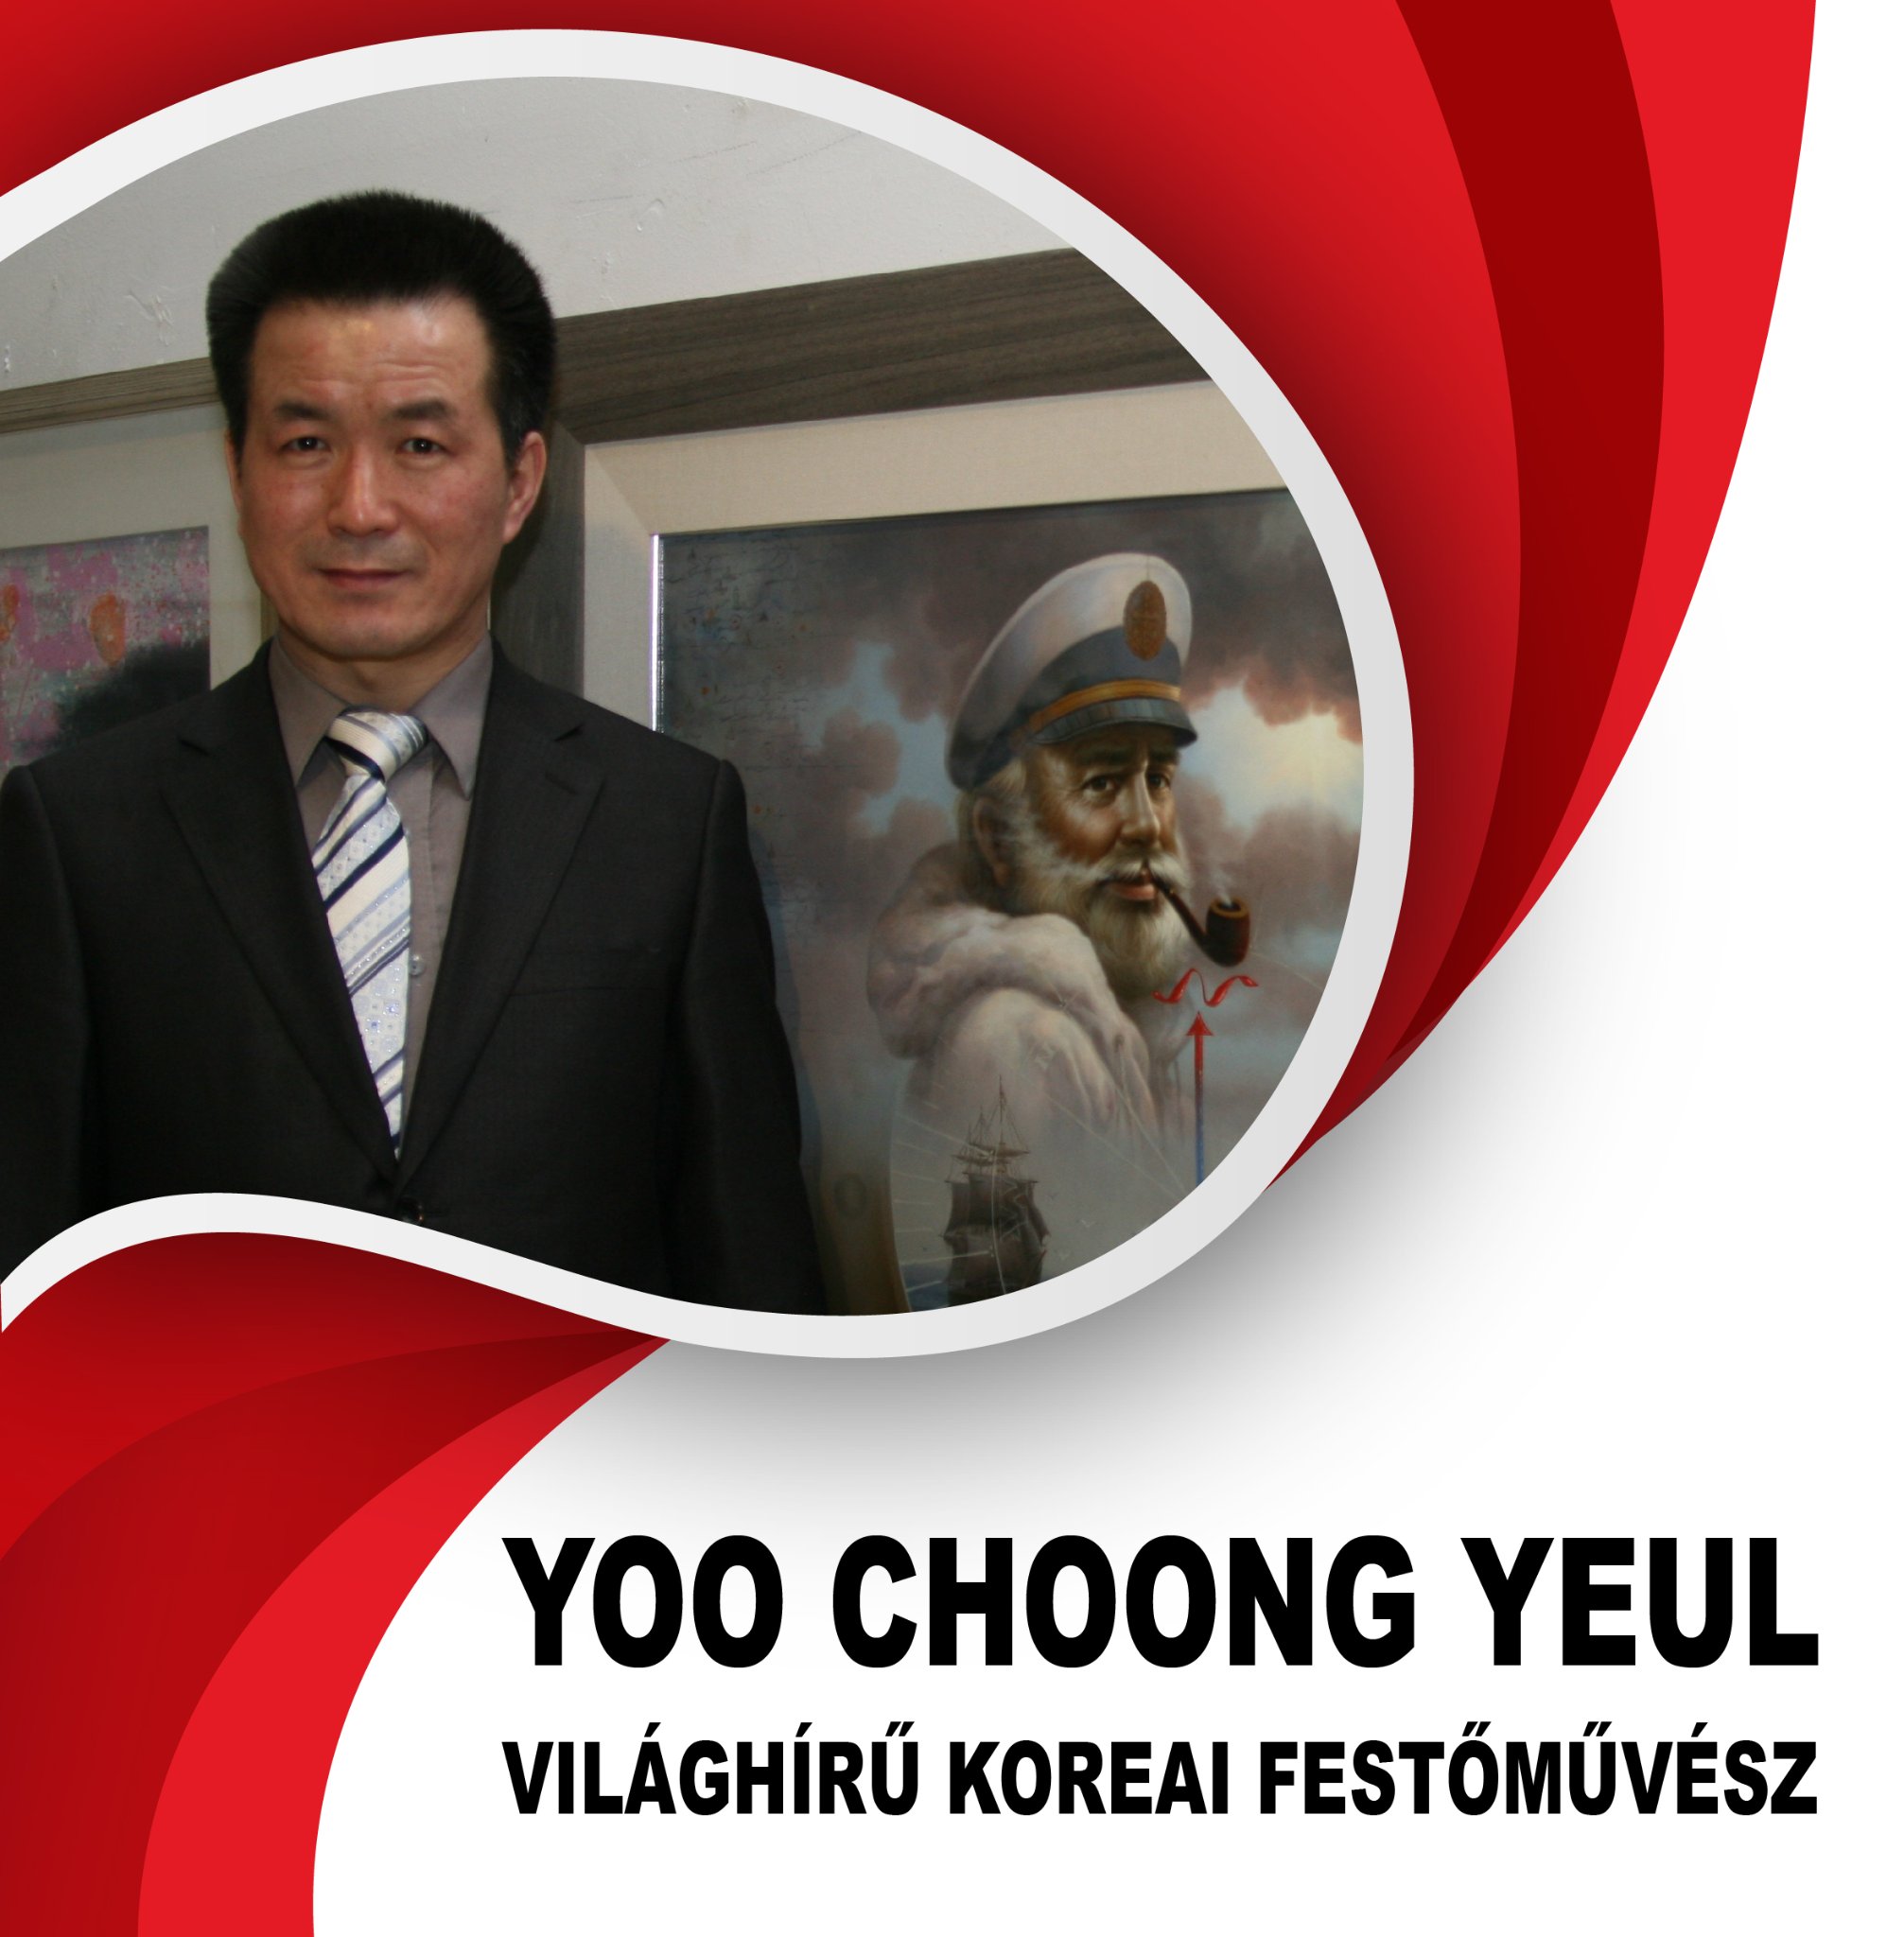 Yoo Choong Yeul koreai világhírű festőművész az eredeti Tengeri Kapitány festője